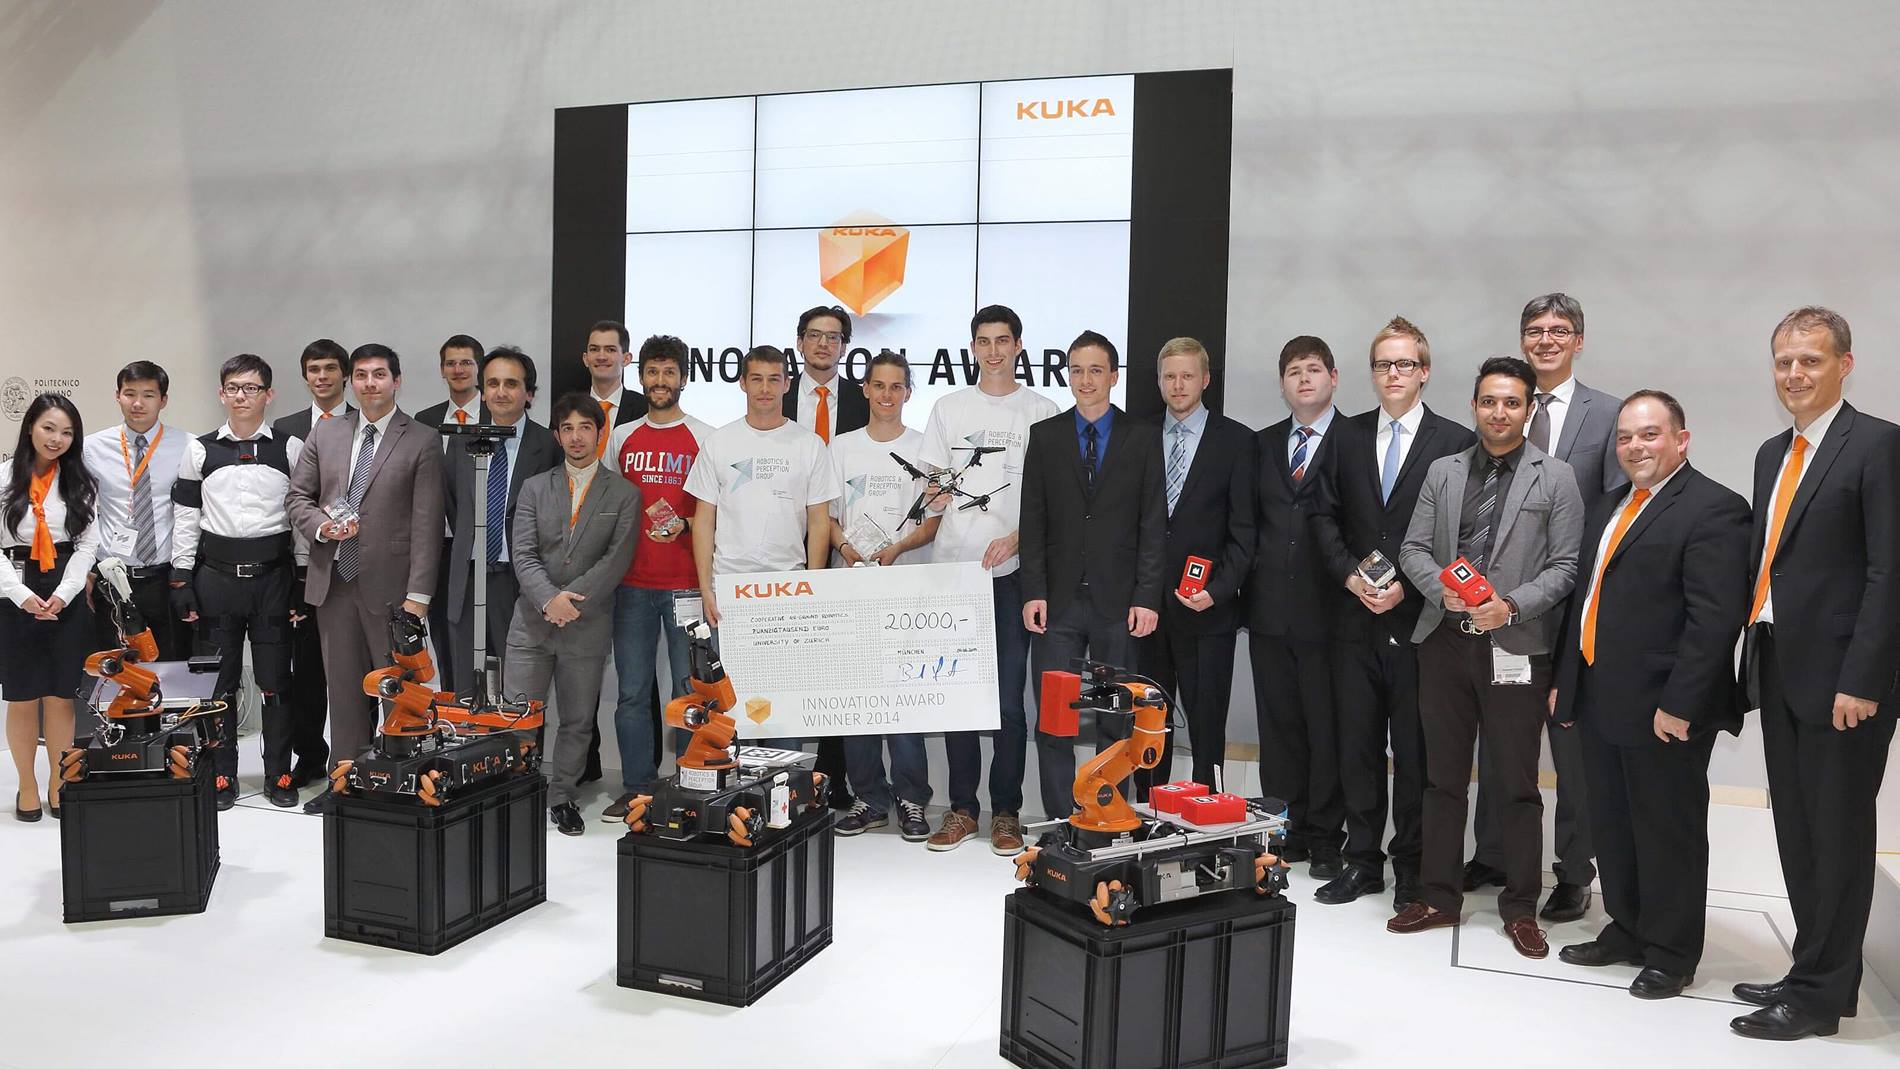 Beim Innovation Award 2014 zeigten die Teilnehmer Innovation mit dem KUKA youBot